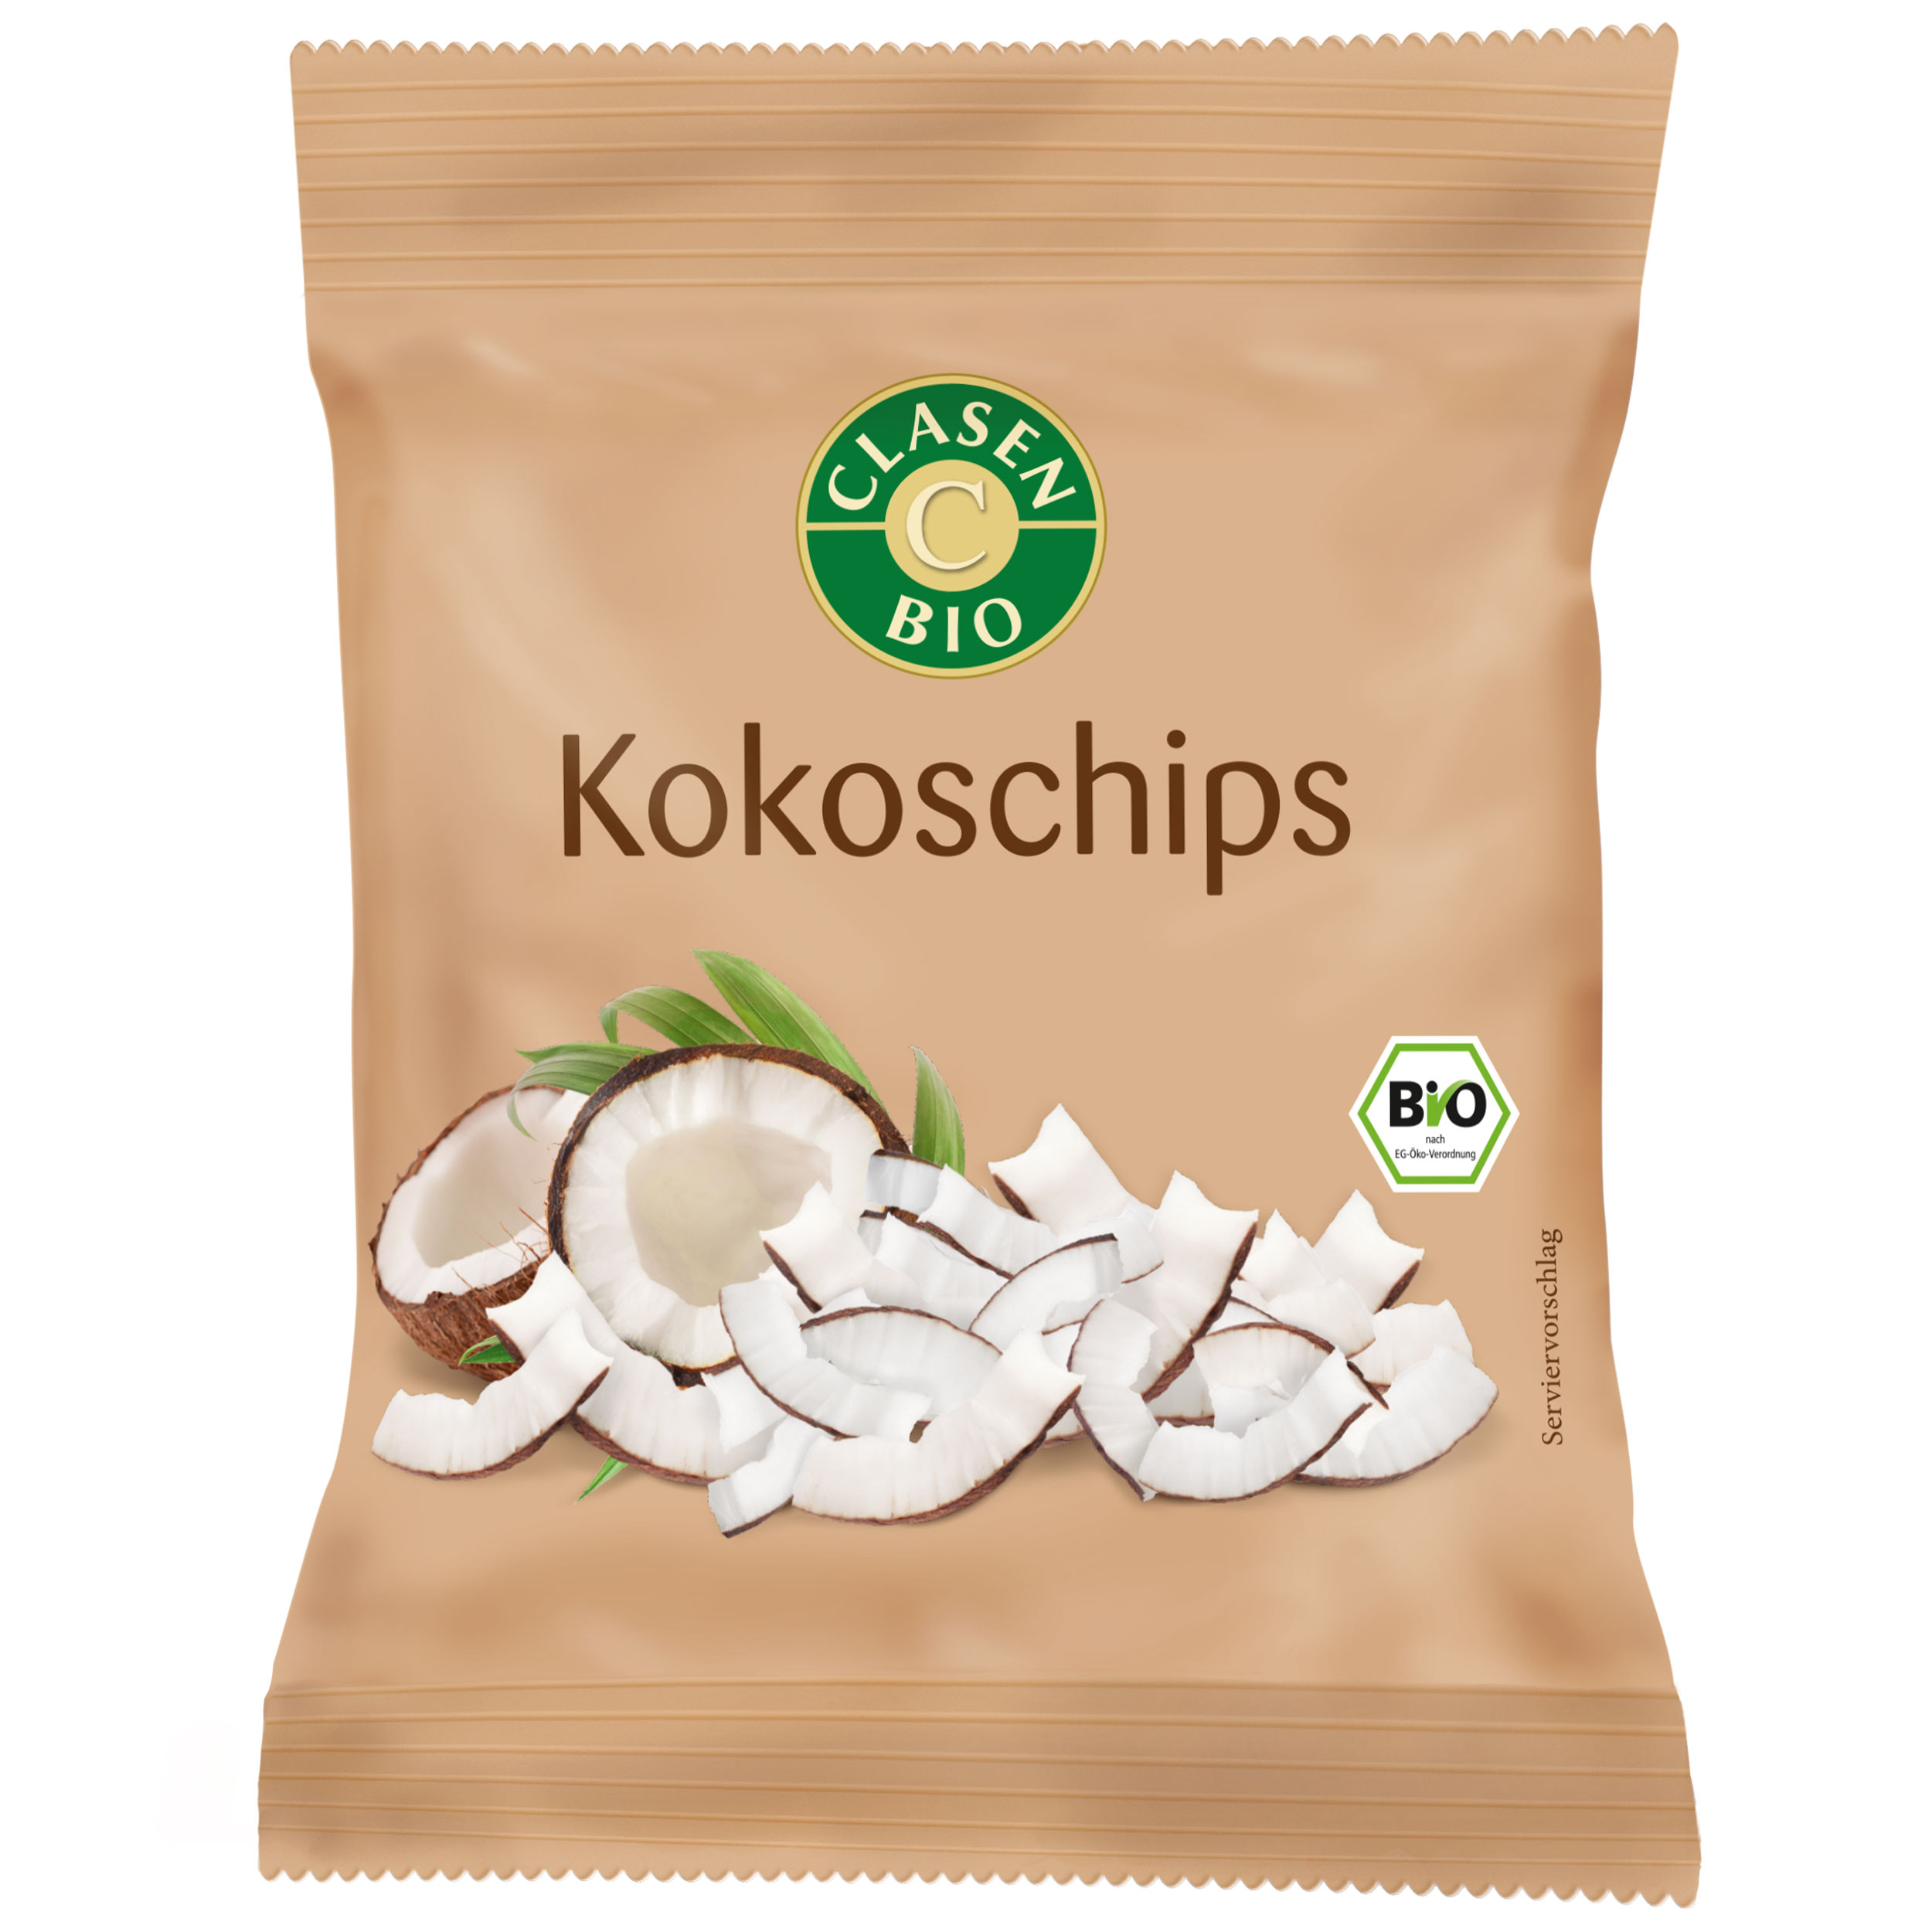 Kokoschips Snack Pack